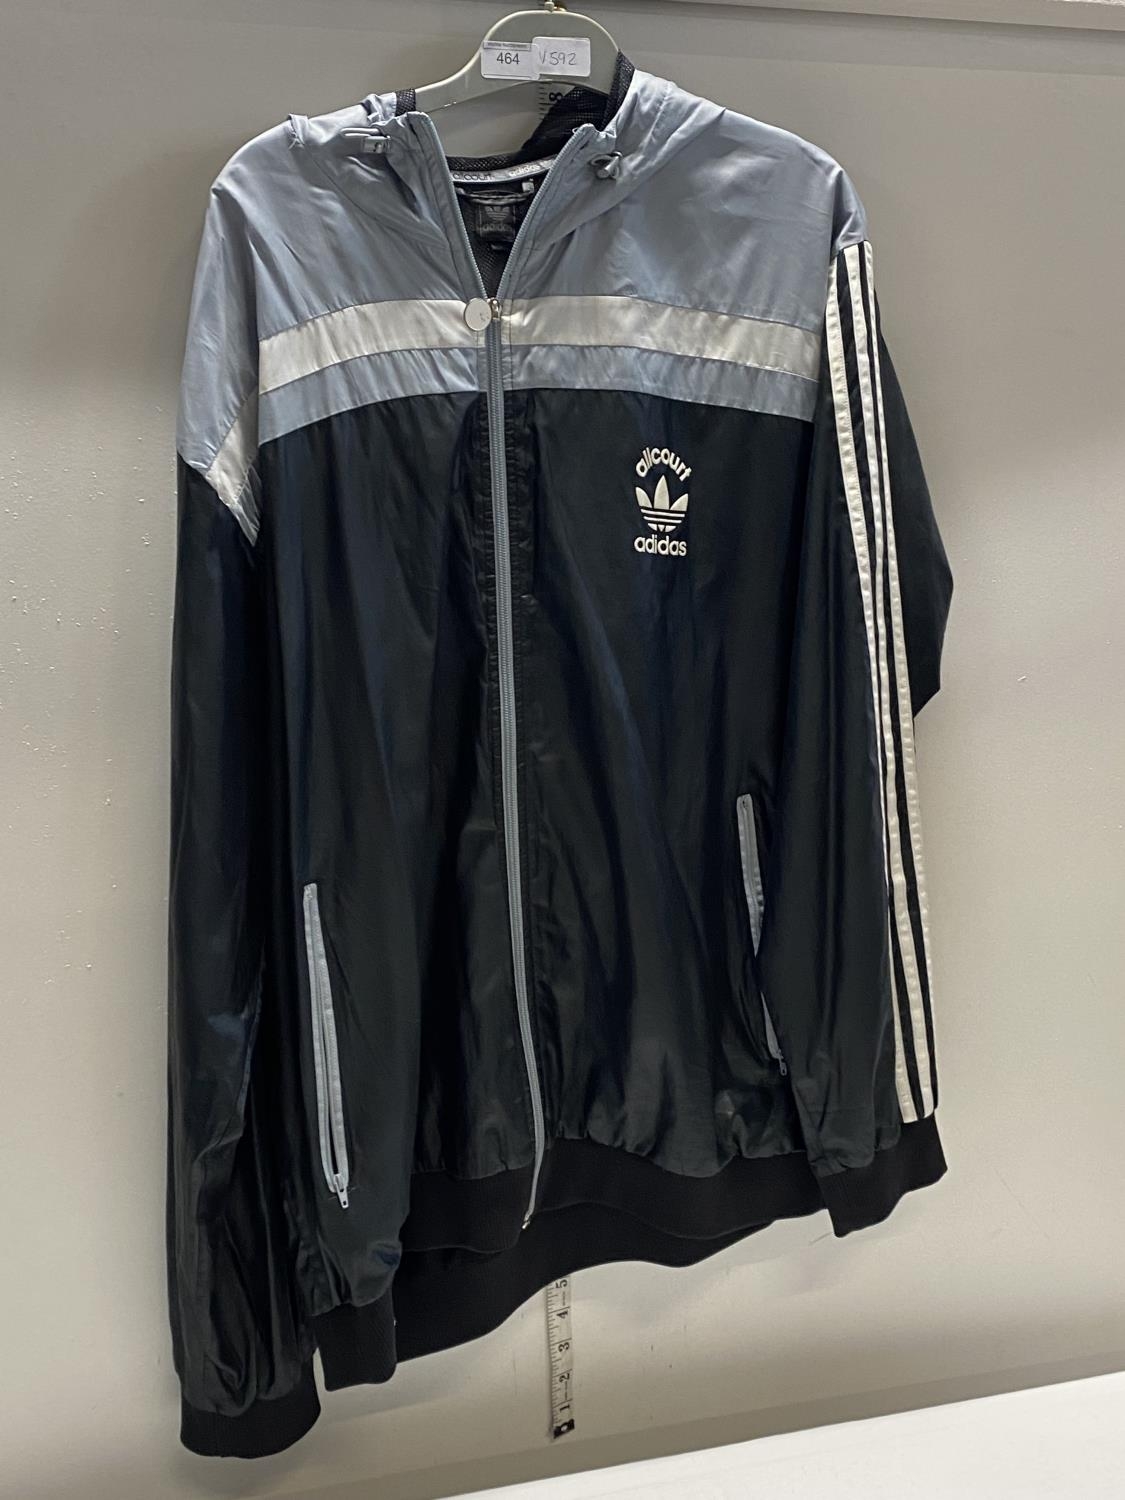 A Adidas jacket size XL